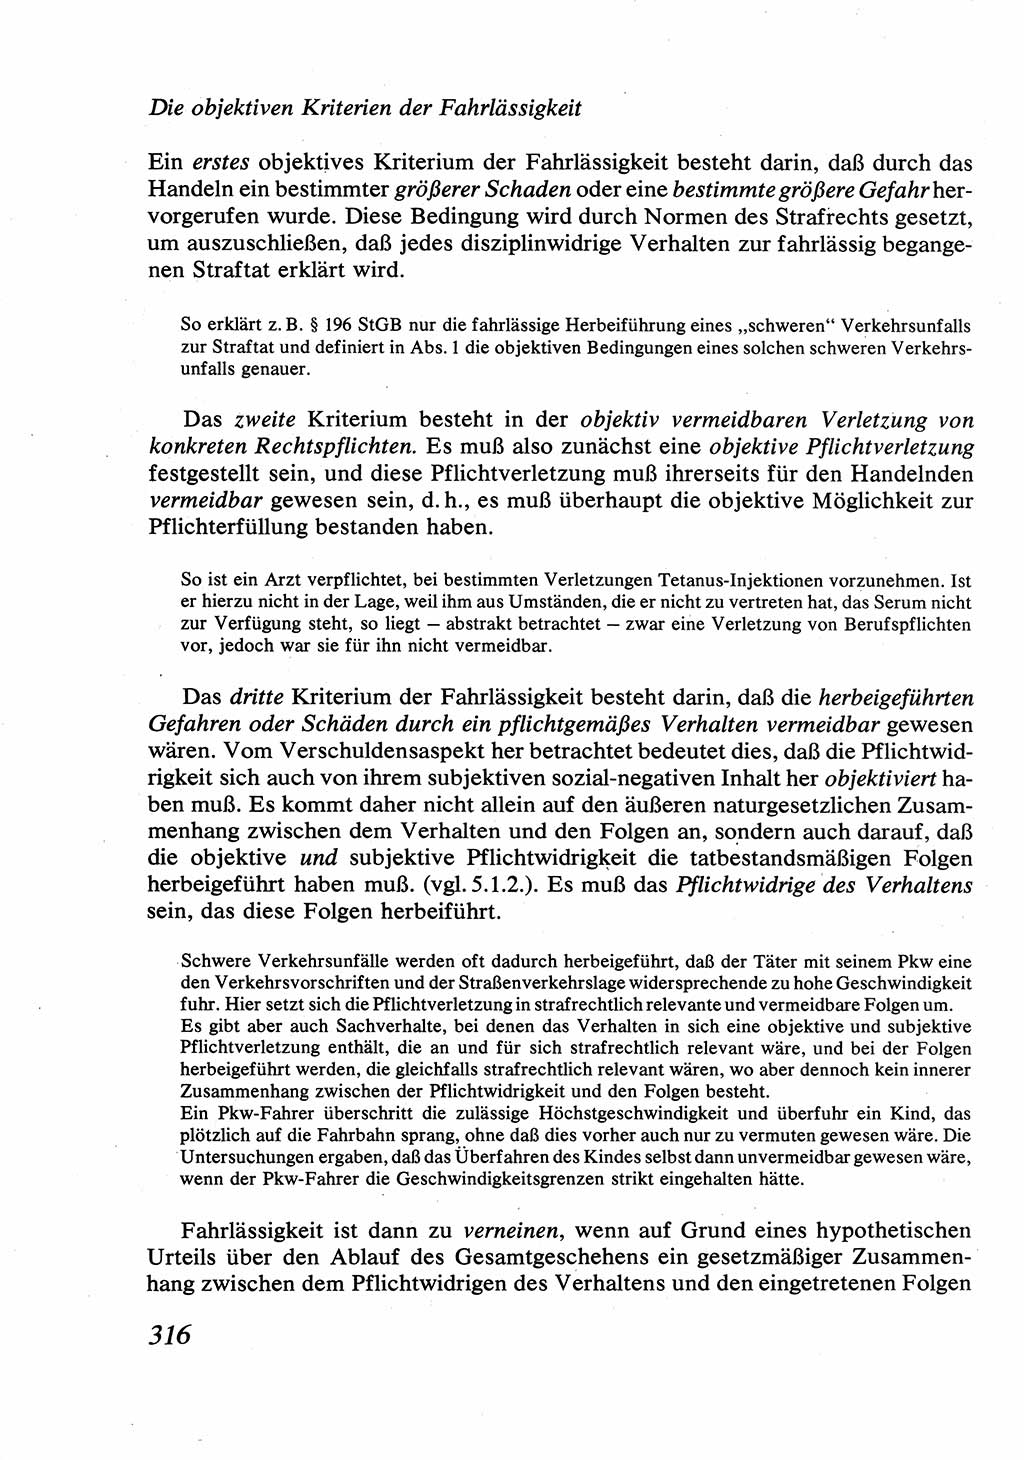 Strafrecht [Deutsche Demokratische Republik (DDR)], Allgemeiner Teil, Lehrbuch 1976, Seite 316 (Strafr. DDR AT Lb. 1976, S. 316)